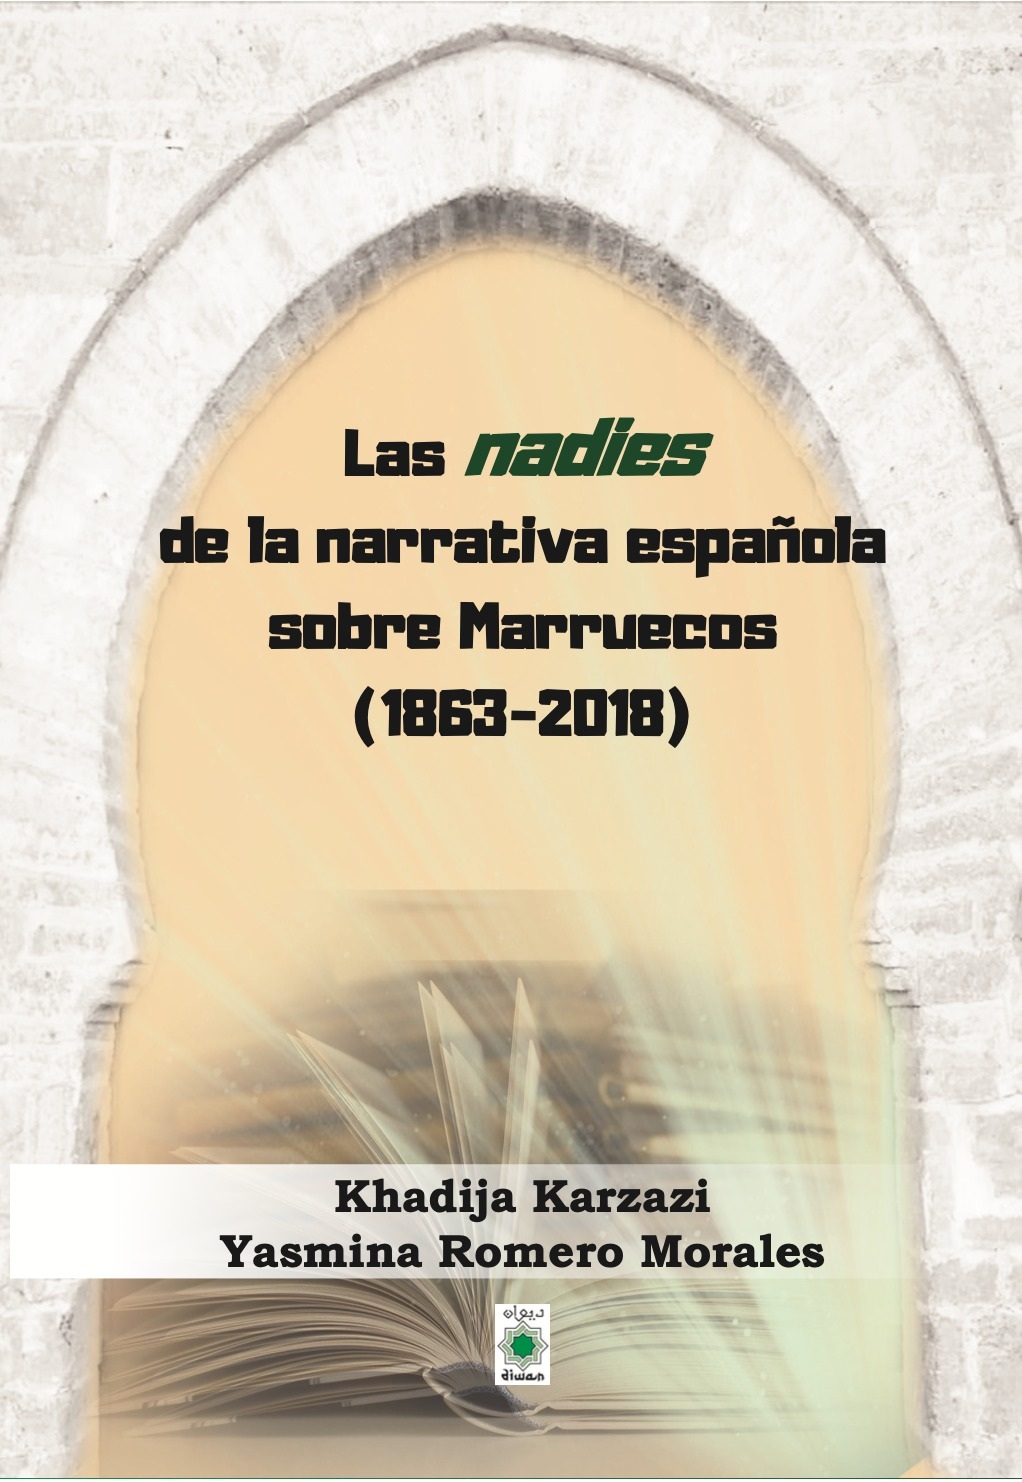 LAS PROFESORAS Khadija Karzazi y Yasmina Romero Morales, PUBLICAN  Las nadies de la narrativa española sobre Marruecos (1863-2018).